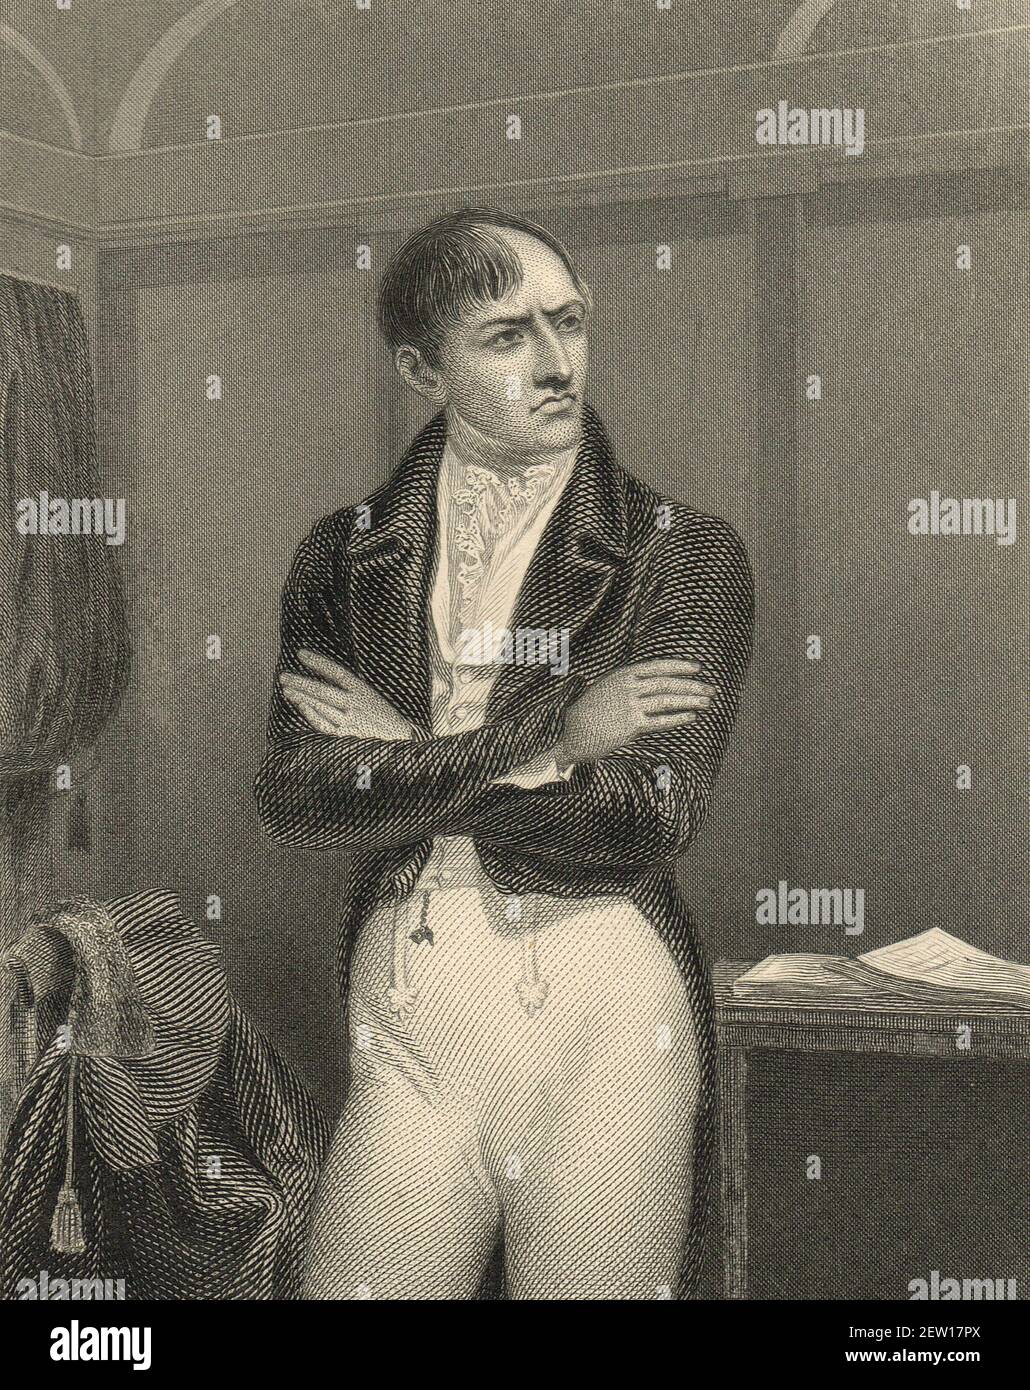 Robert Emmet, republicano irlandés, patriota nacionalista irlandés, orador y líder rebelde, Quién lideró una rebelión abortiva contra el gobierno británico en 1803 Foto de stock